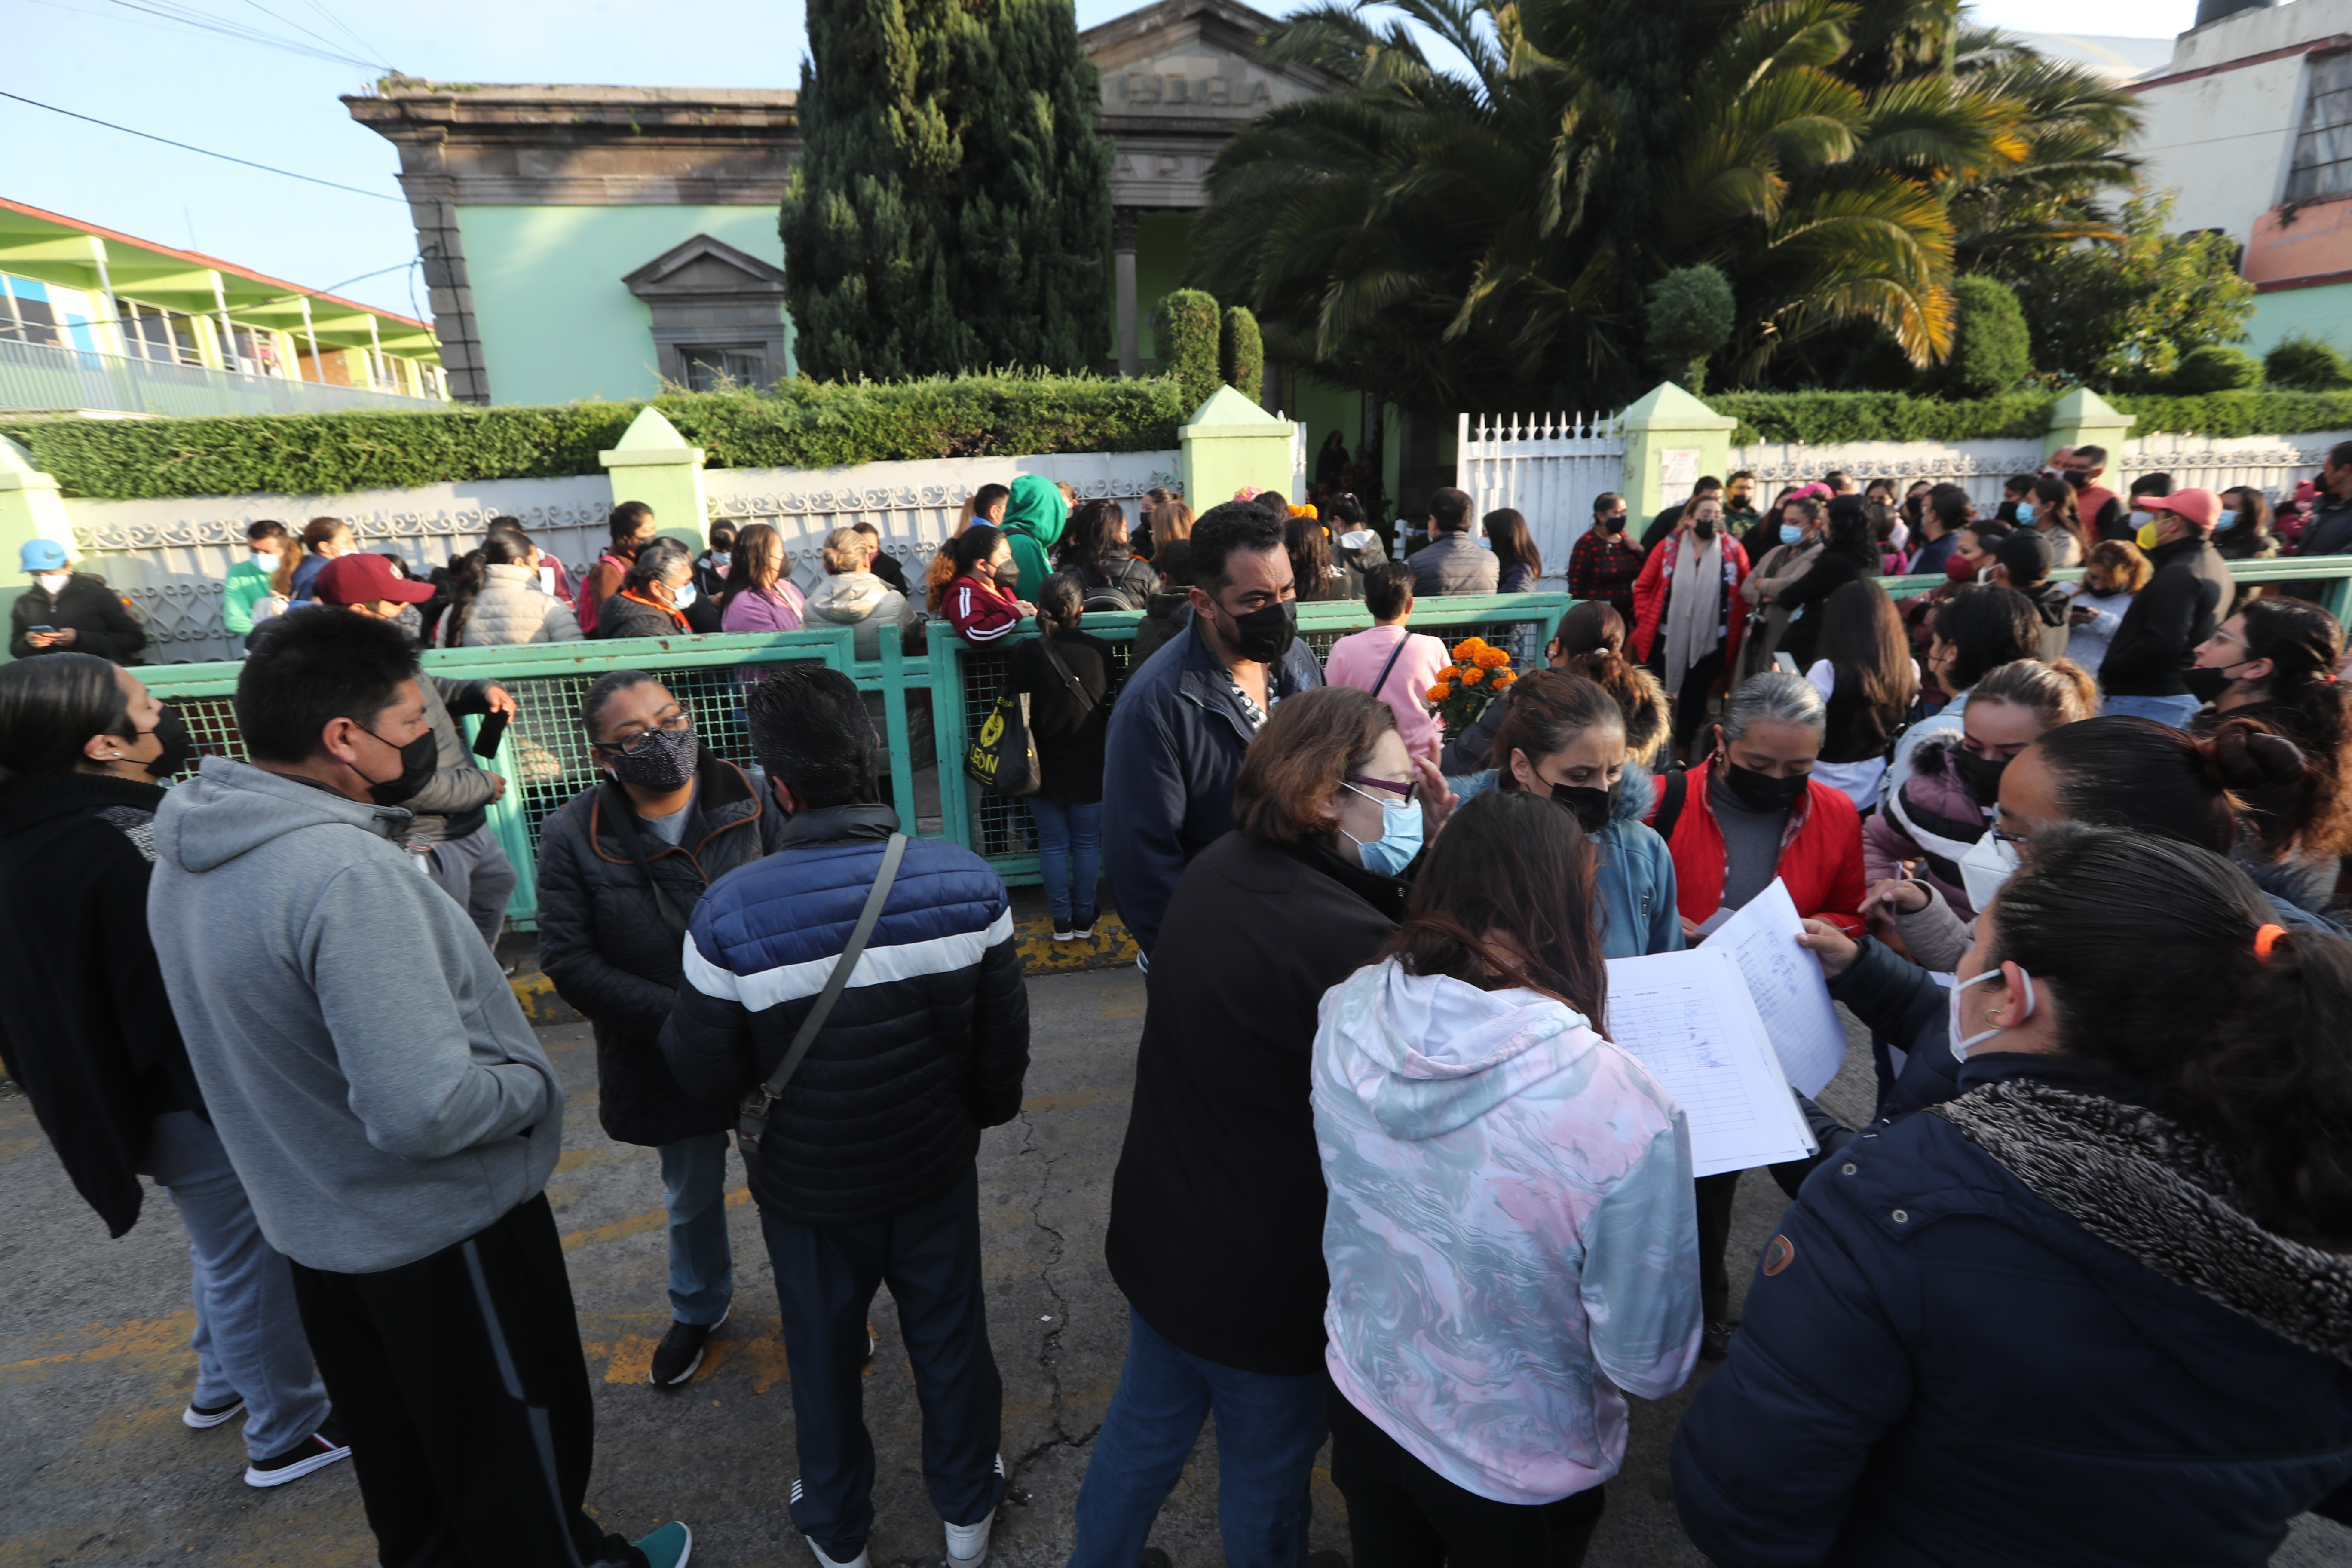 Padres de familia denuncian abusos en escuela primaria de Toluca